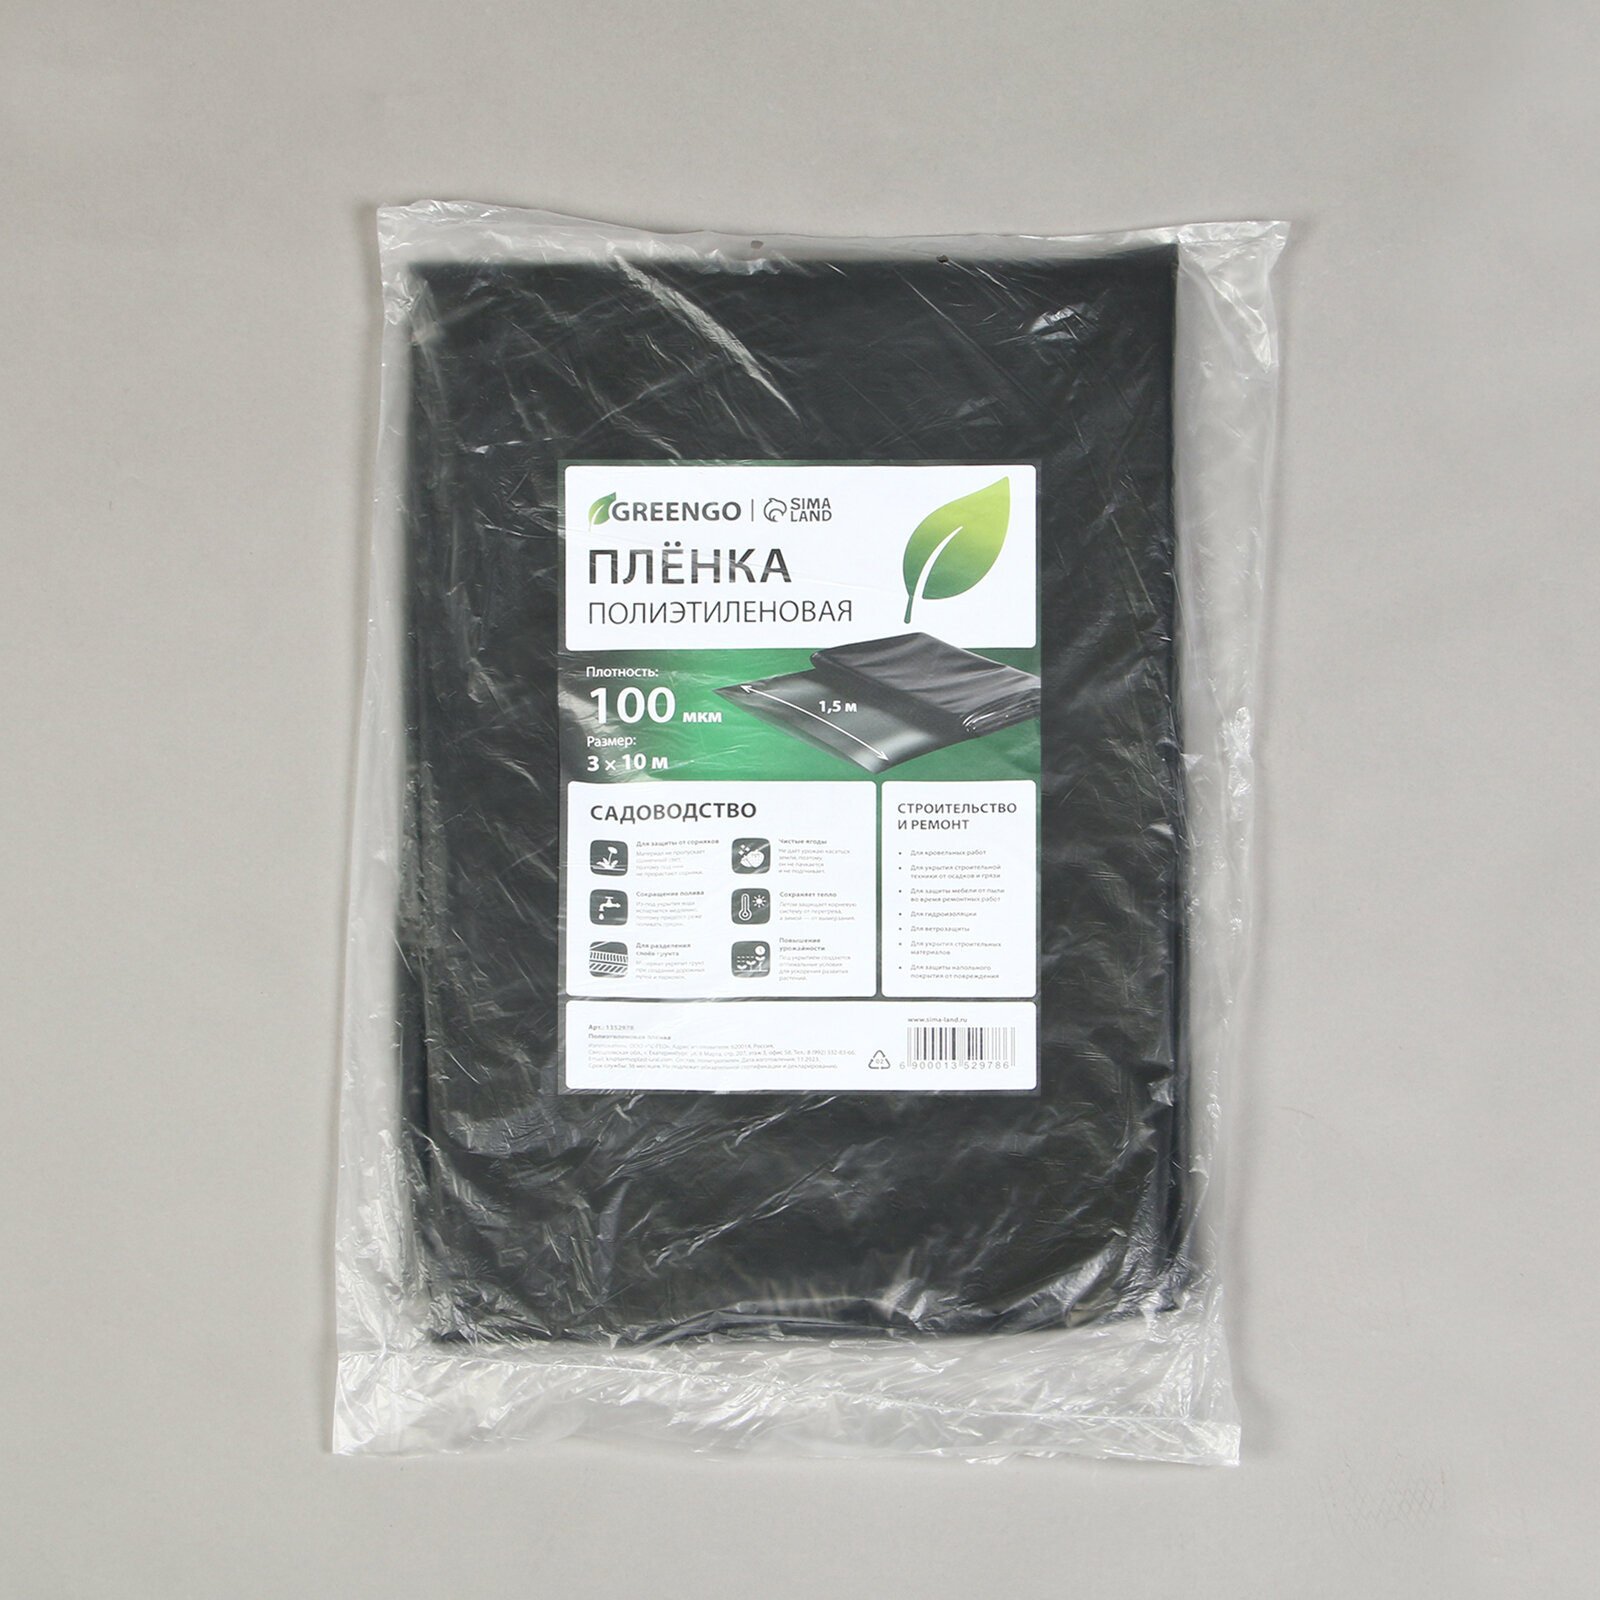 Greengo Плёнка полиэтиленовая, техническая, толщина 100 мкм, 10 × 3 м, рукав (2 × 1,5 м), чёрная, 2 сорт, Эконом 50 %